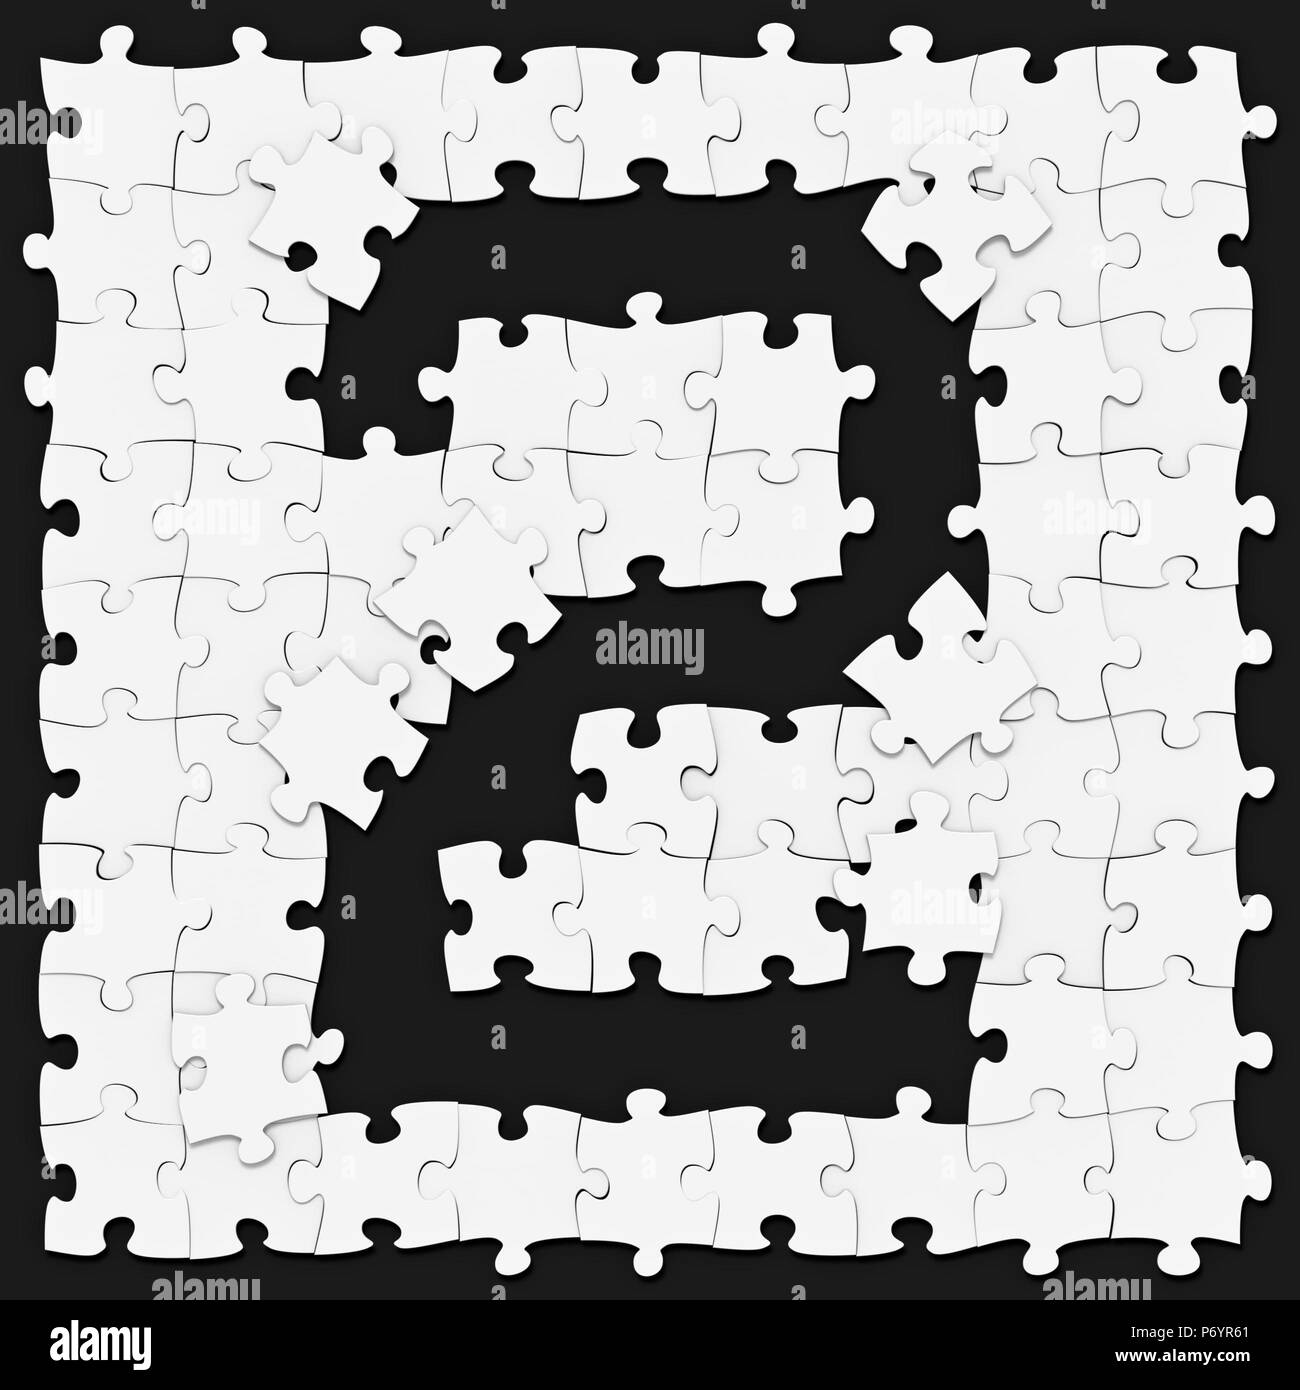 Jigsaw puzzles matemáticos reunidos el dígito 2 o sobre fondo oscuro, puzzle junta puede ser conectado sin fisuras a lo largo de las fronteras, la presentada en 3D para m